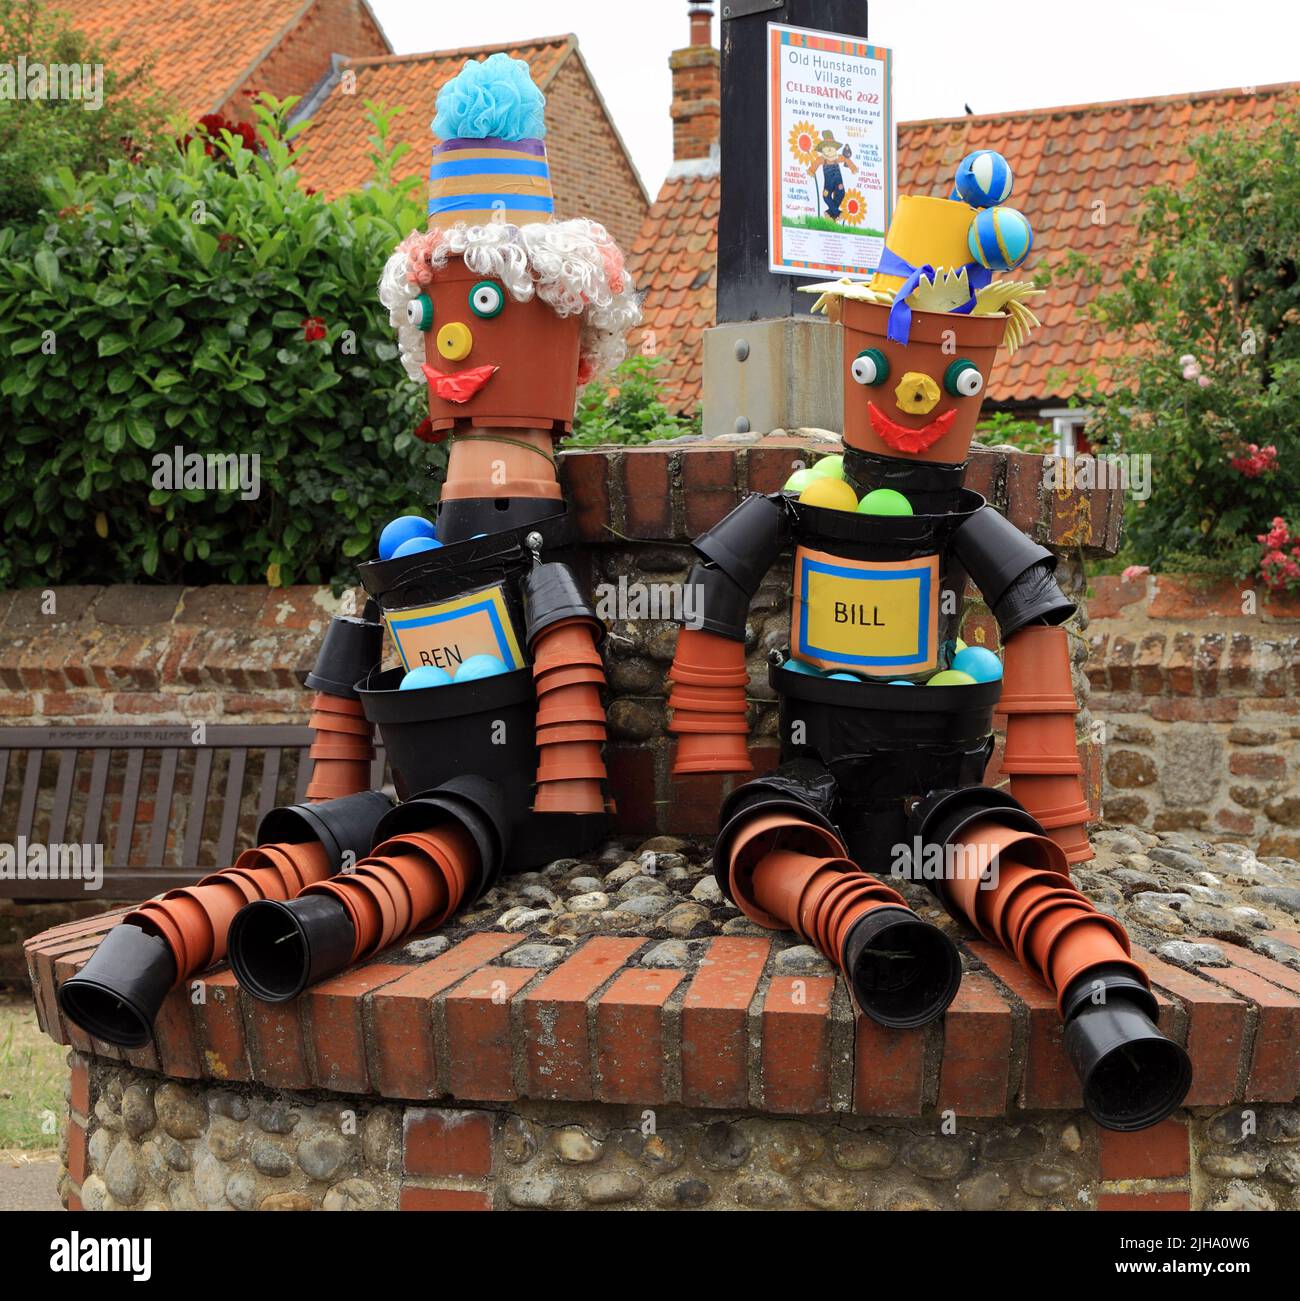 Bill e ben, uomini floerpot, decorazione Festival, modelli, marionette, Old Hunstanton Village , Norfolk, Inghilterra Foto Stock